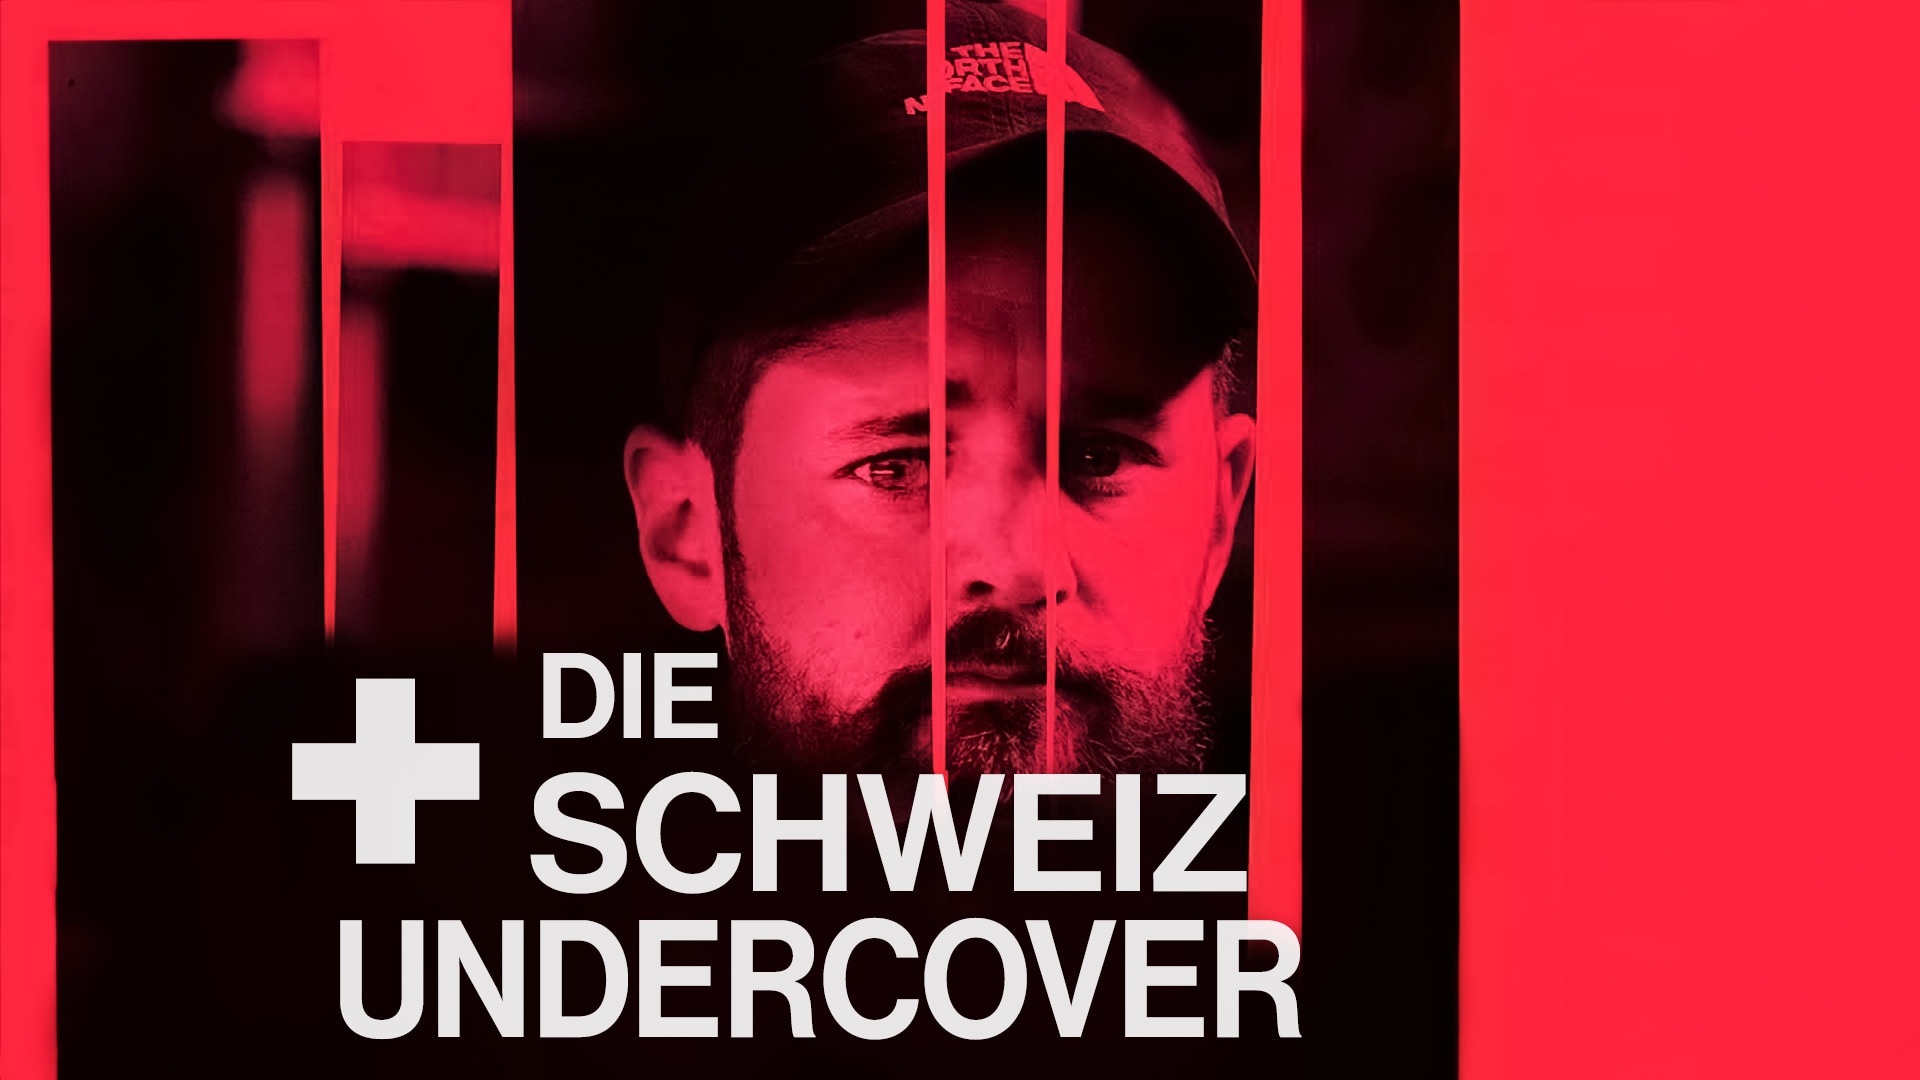 Die Schweiz undercover